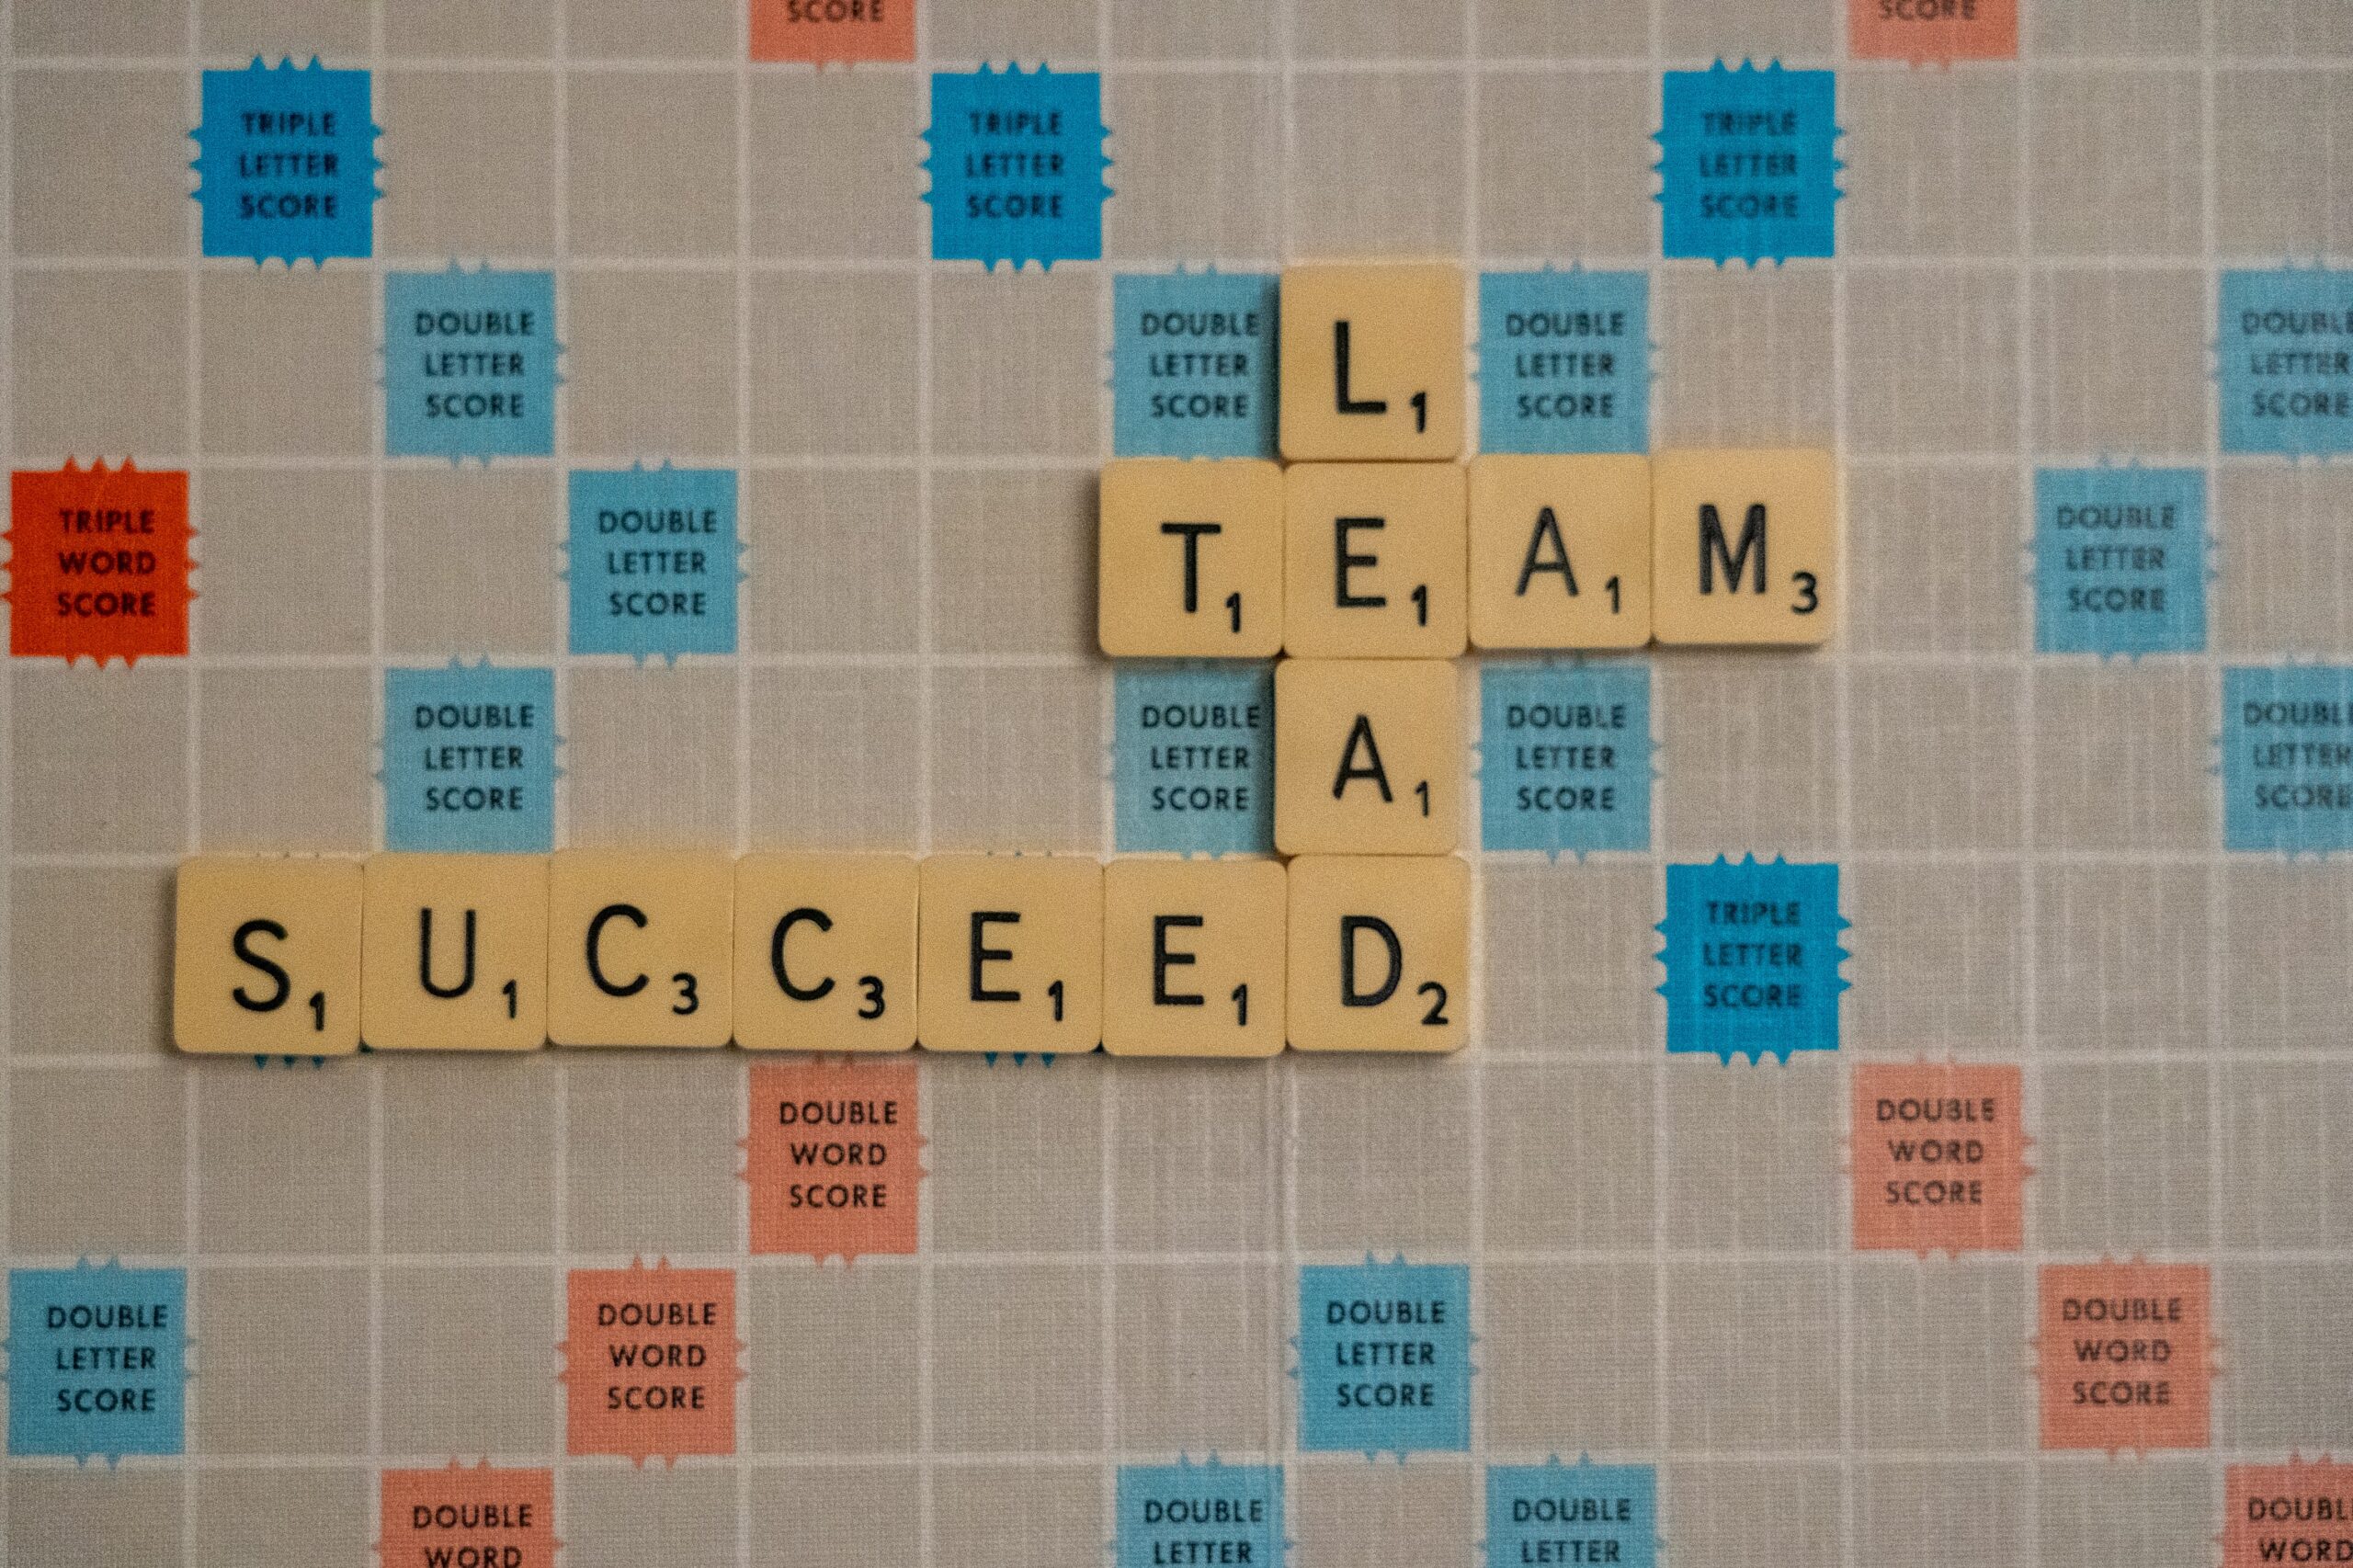 Tile letters on Scrabble board Lead Team Succeed